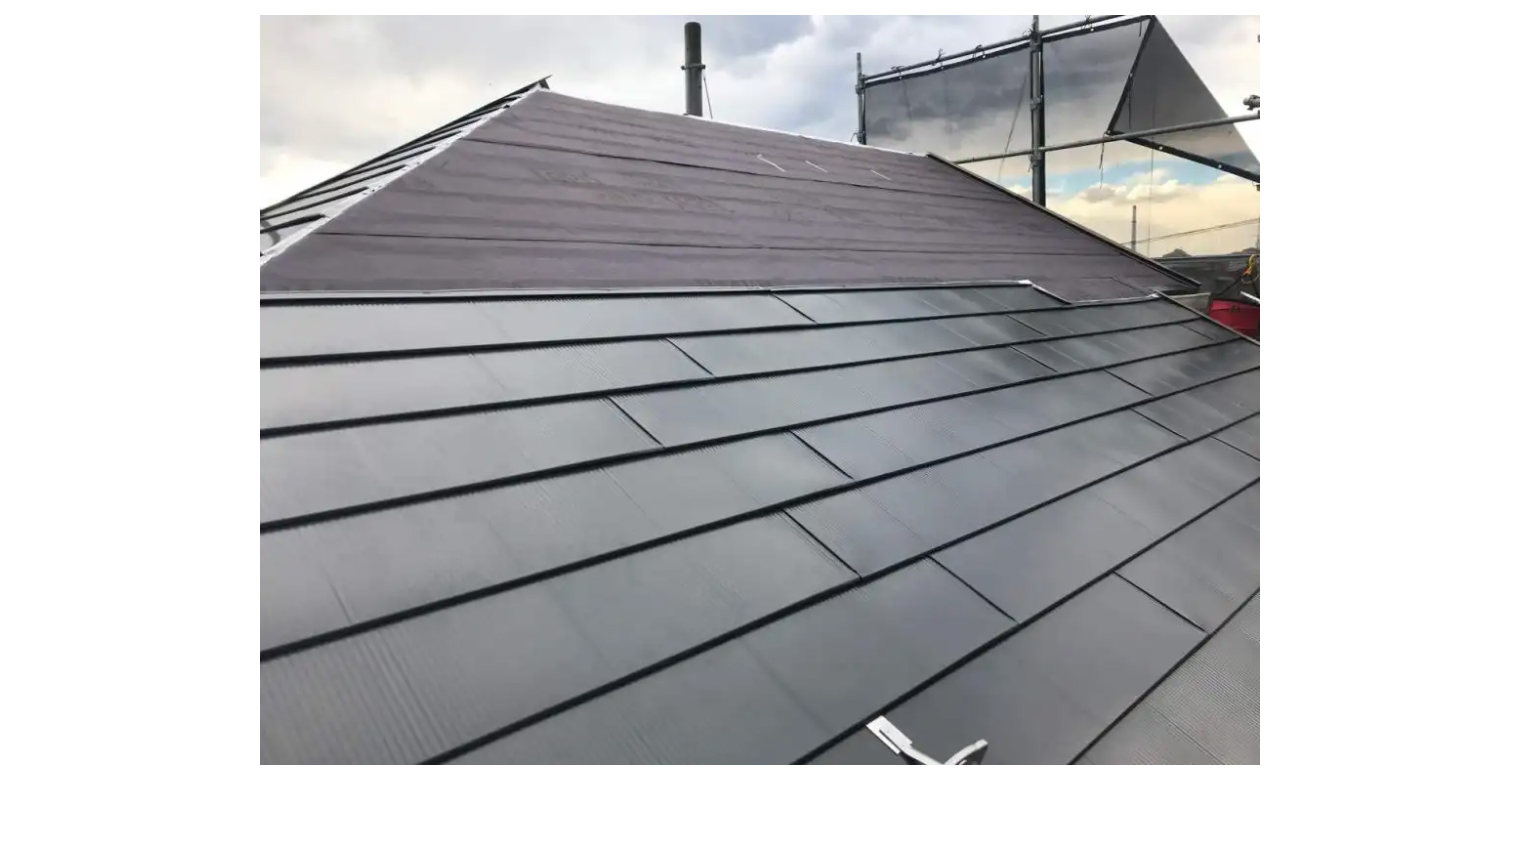 【見積例付き】屋根のカバー工法の費用相場と優良業者を選ぶコツ4つ - 神奈川・東京の外壁塗装、屋根塗装はユーコーコミュニティ